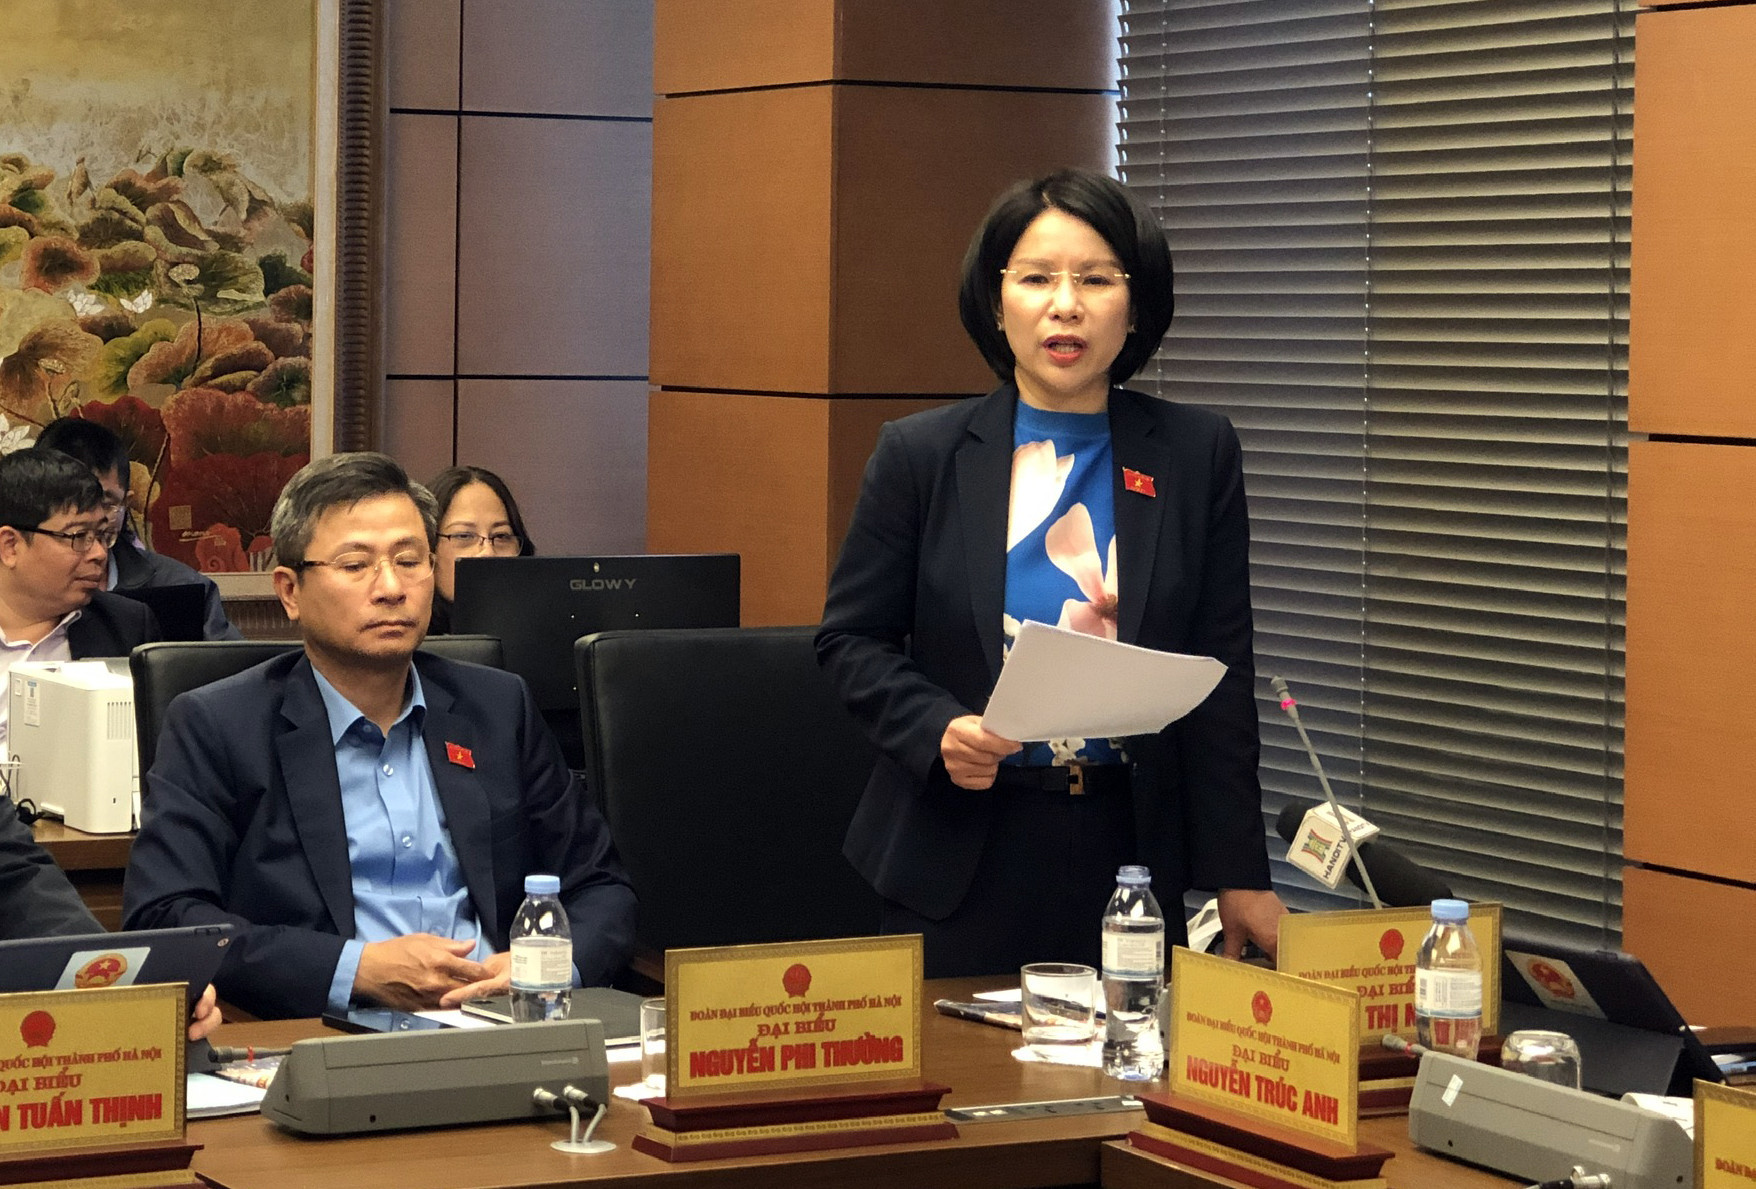 Giám đốc Sở Y tế Hà Nội nêu vướng mắc về cơ chế mua sắm trong phòng, chống dịch Covid-19